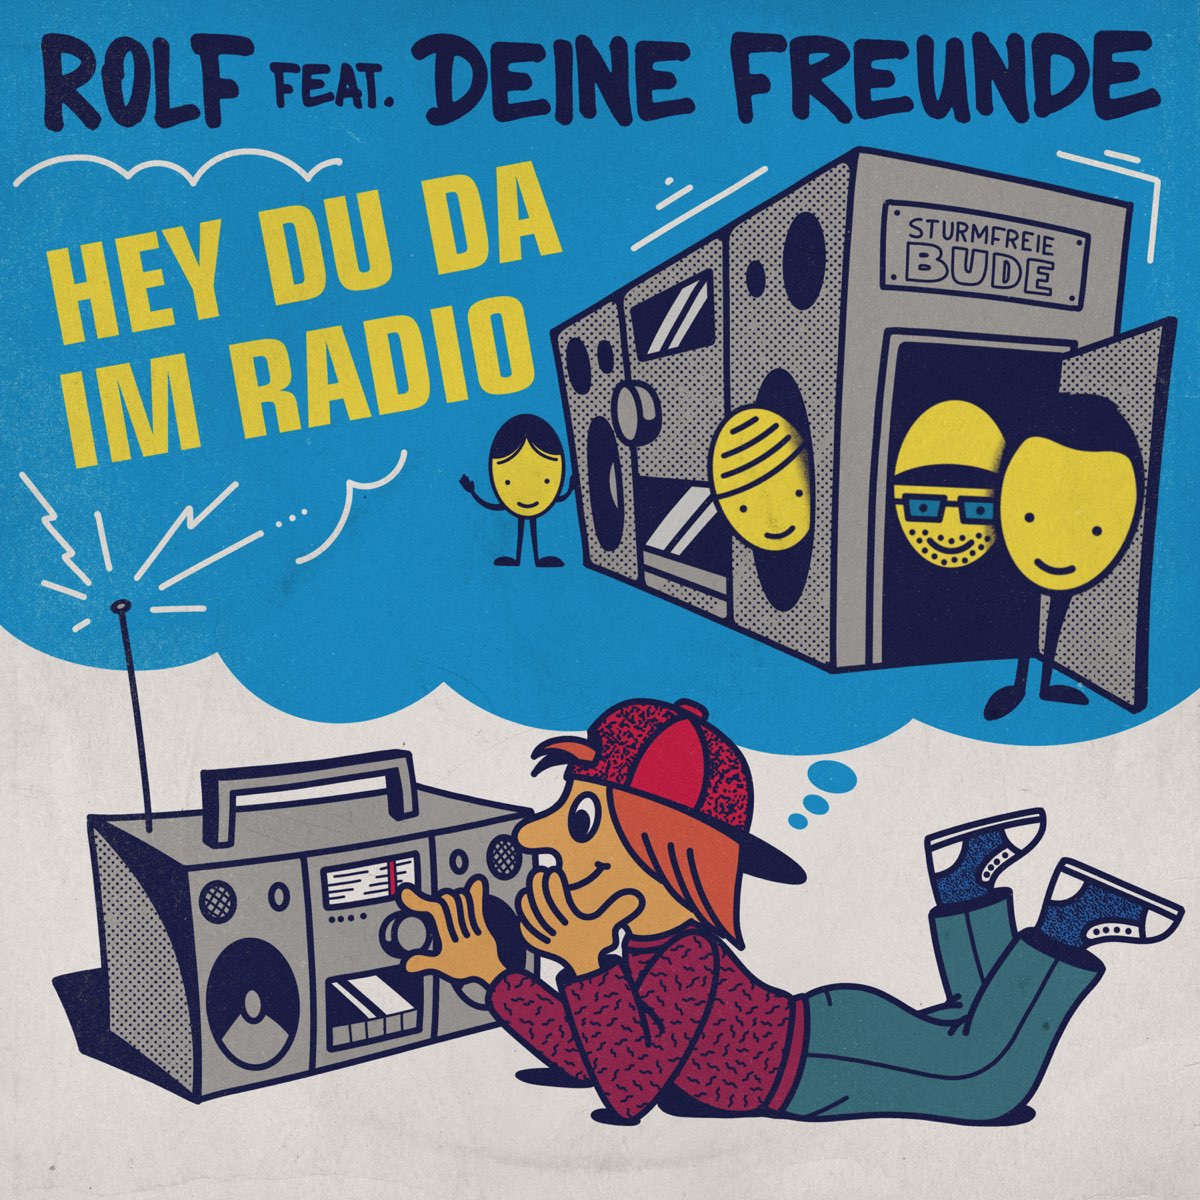 Hey du da im Radio (feat. Deine Freunde) - Single by Rolf Zuckowski on  Apple Music